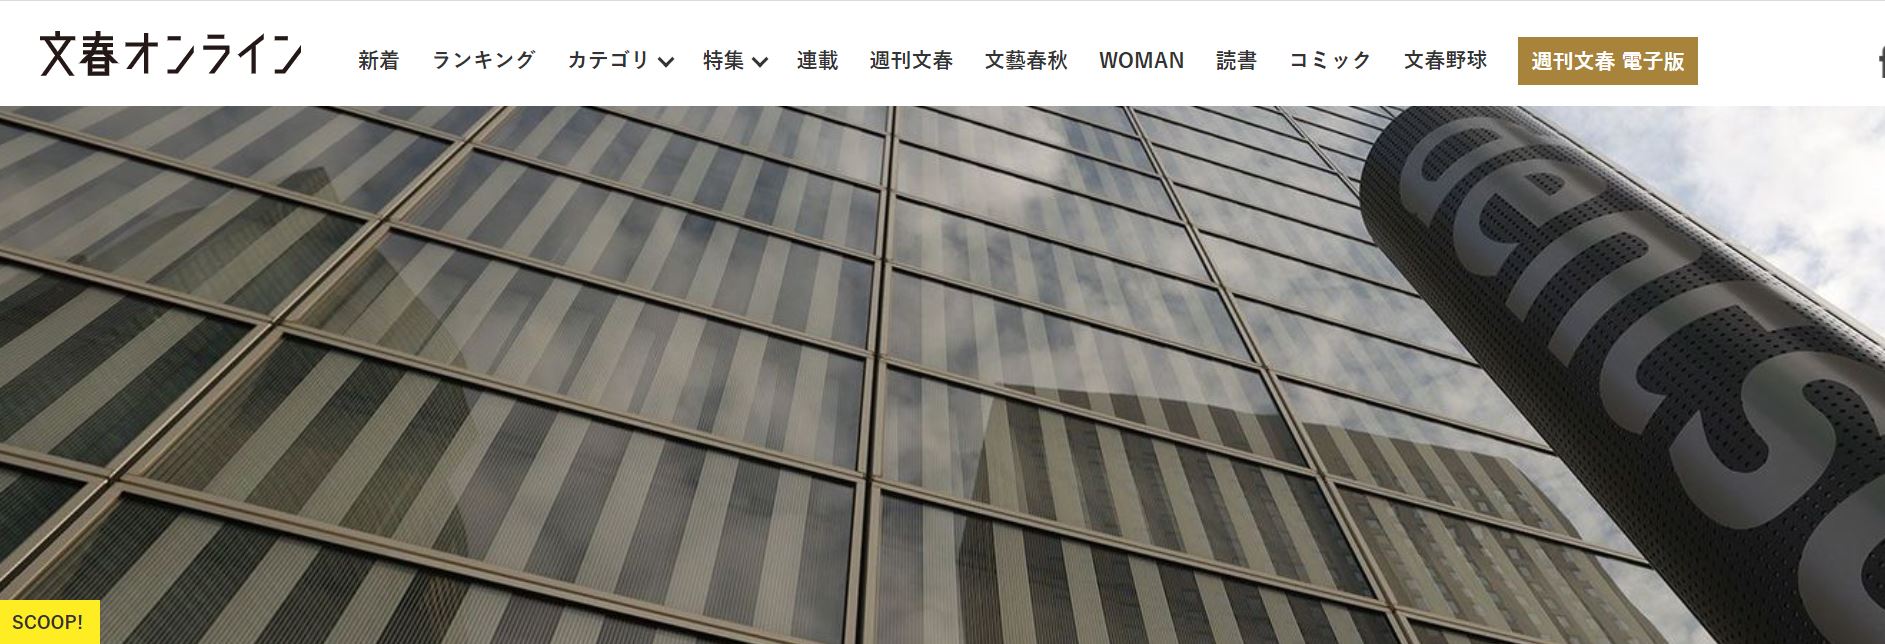 도쿄올림픽 개·폐회식 총감독이었던 미키코 안무가(사진 위). 슈칸분슌은 미키코의 중도 퇴장에 광고회사 덴츠의 압력이 있었다고 보도했다. [출처=NHK 월드, 슈칸분슌 홈페이지]